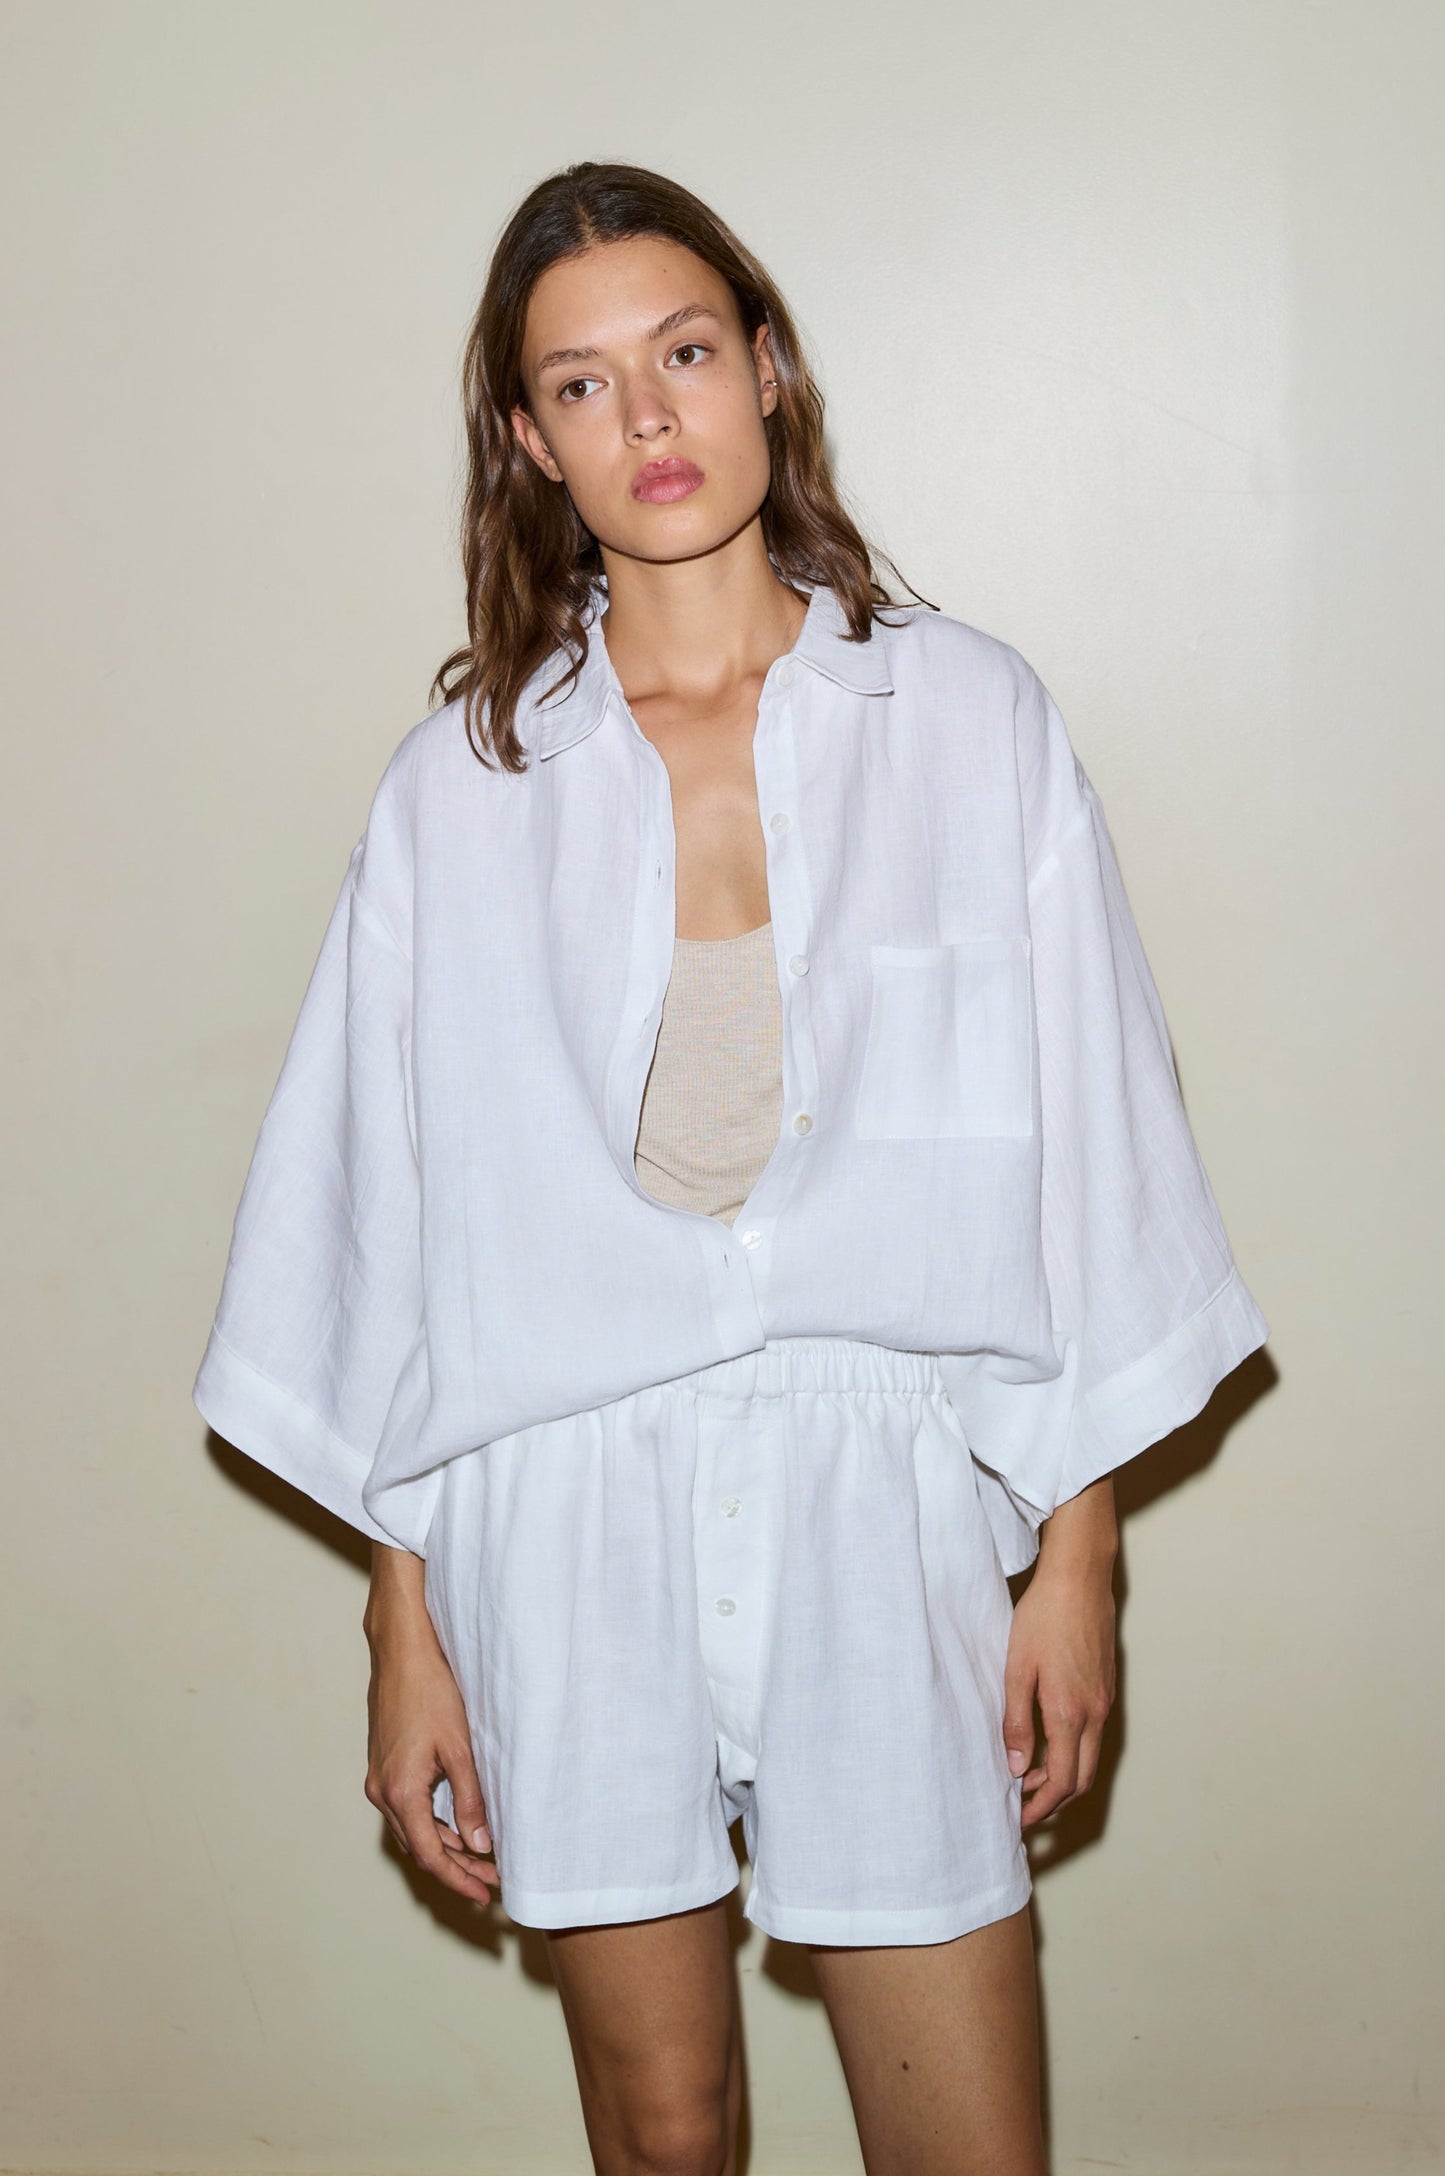 Female model wearing the 03 set - white by Deiji Studios against plain background